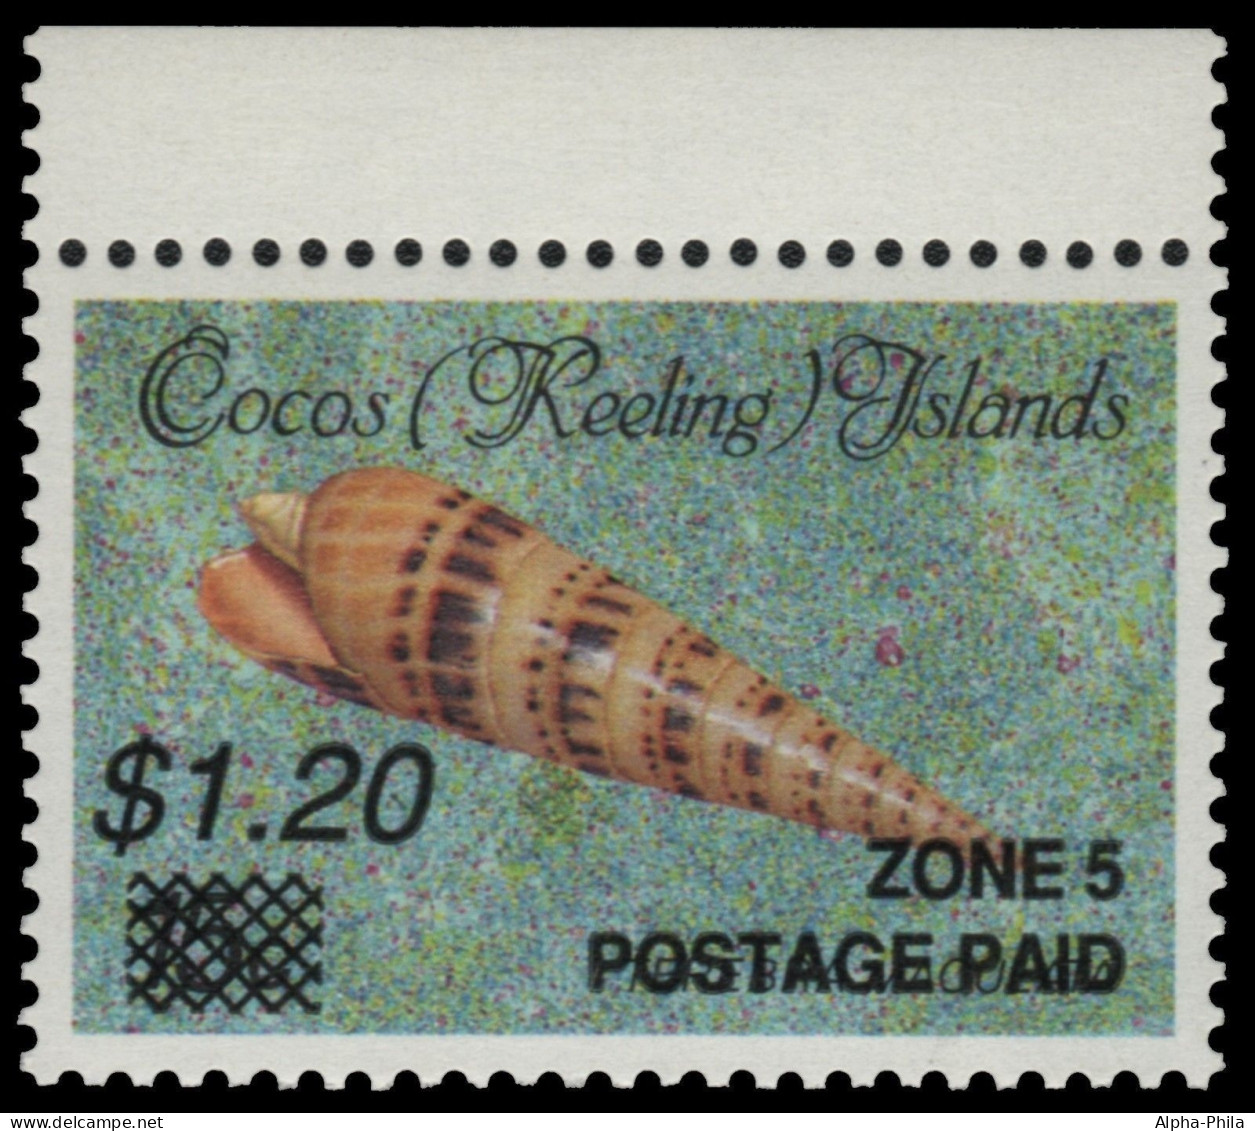 Kokos-Inseln 1991 - Mi-Nr. 244 ** - MNH - Meeresschnecken / Marine Snails (I) - Cocos (Keeling) Islands